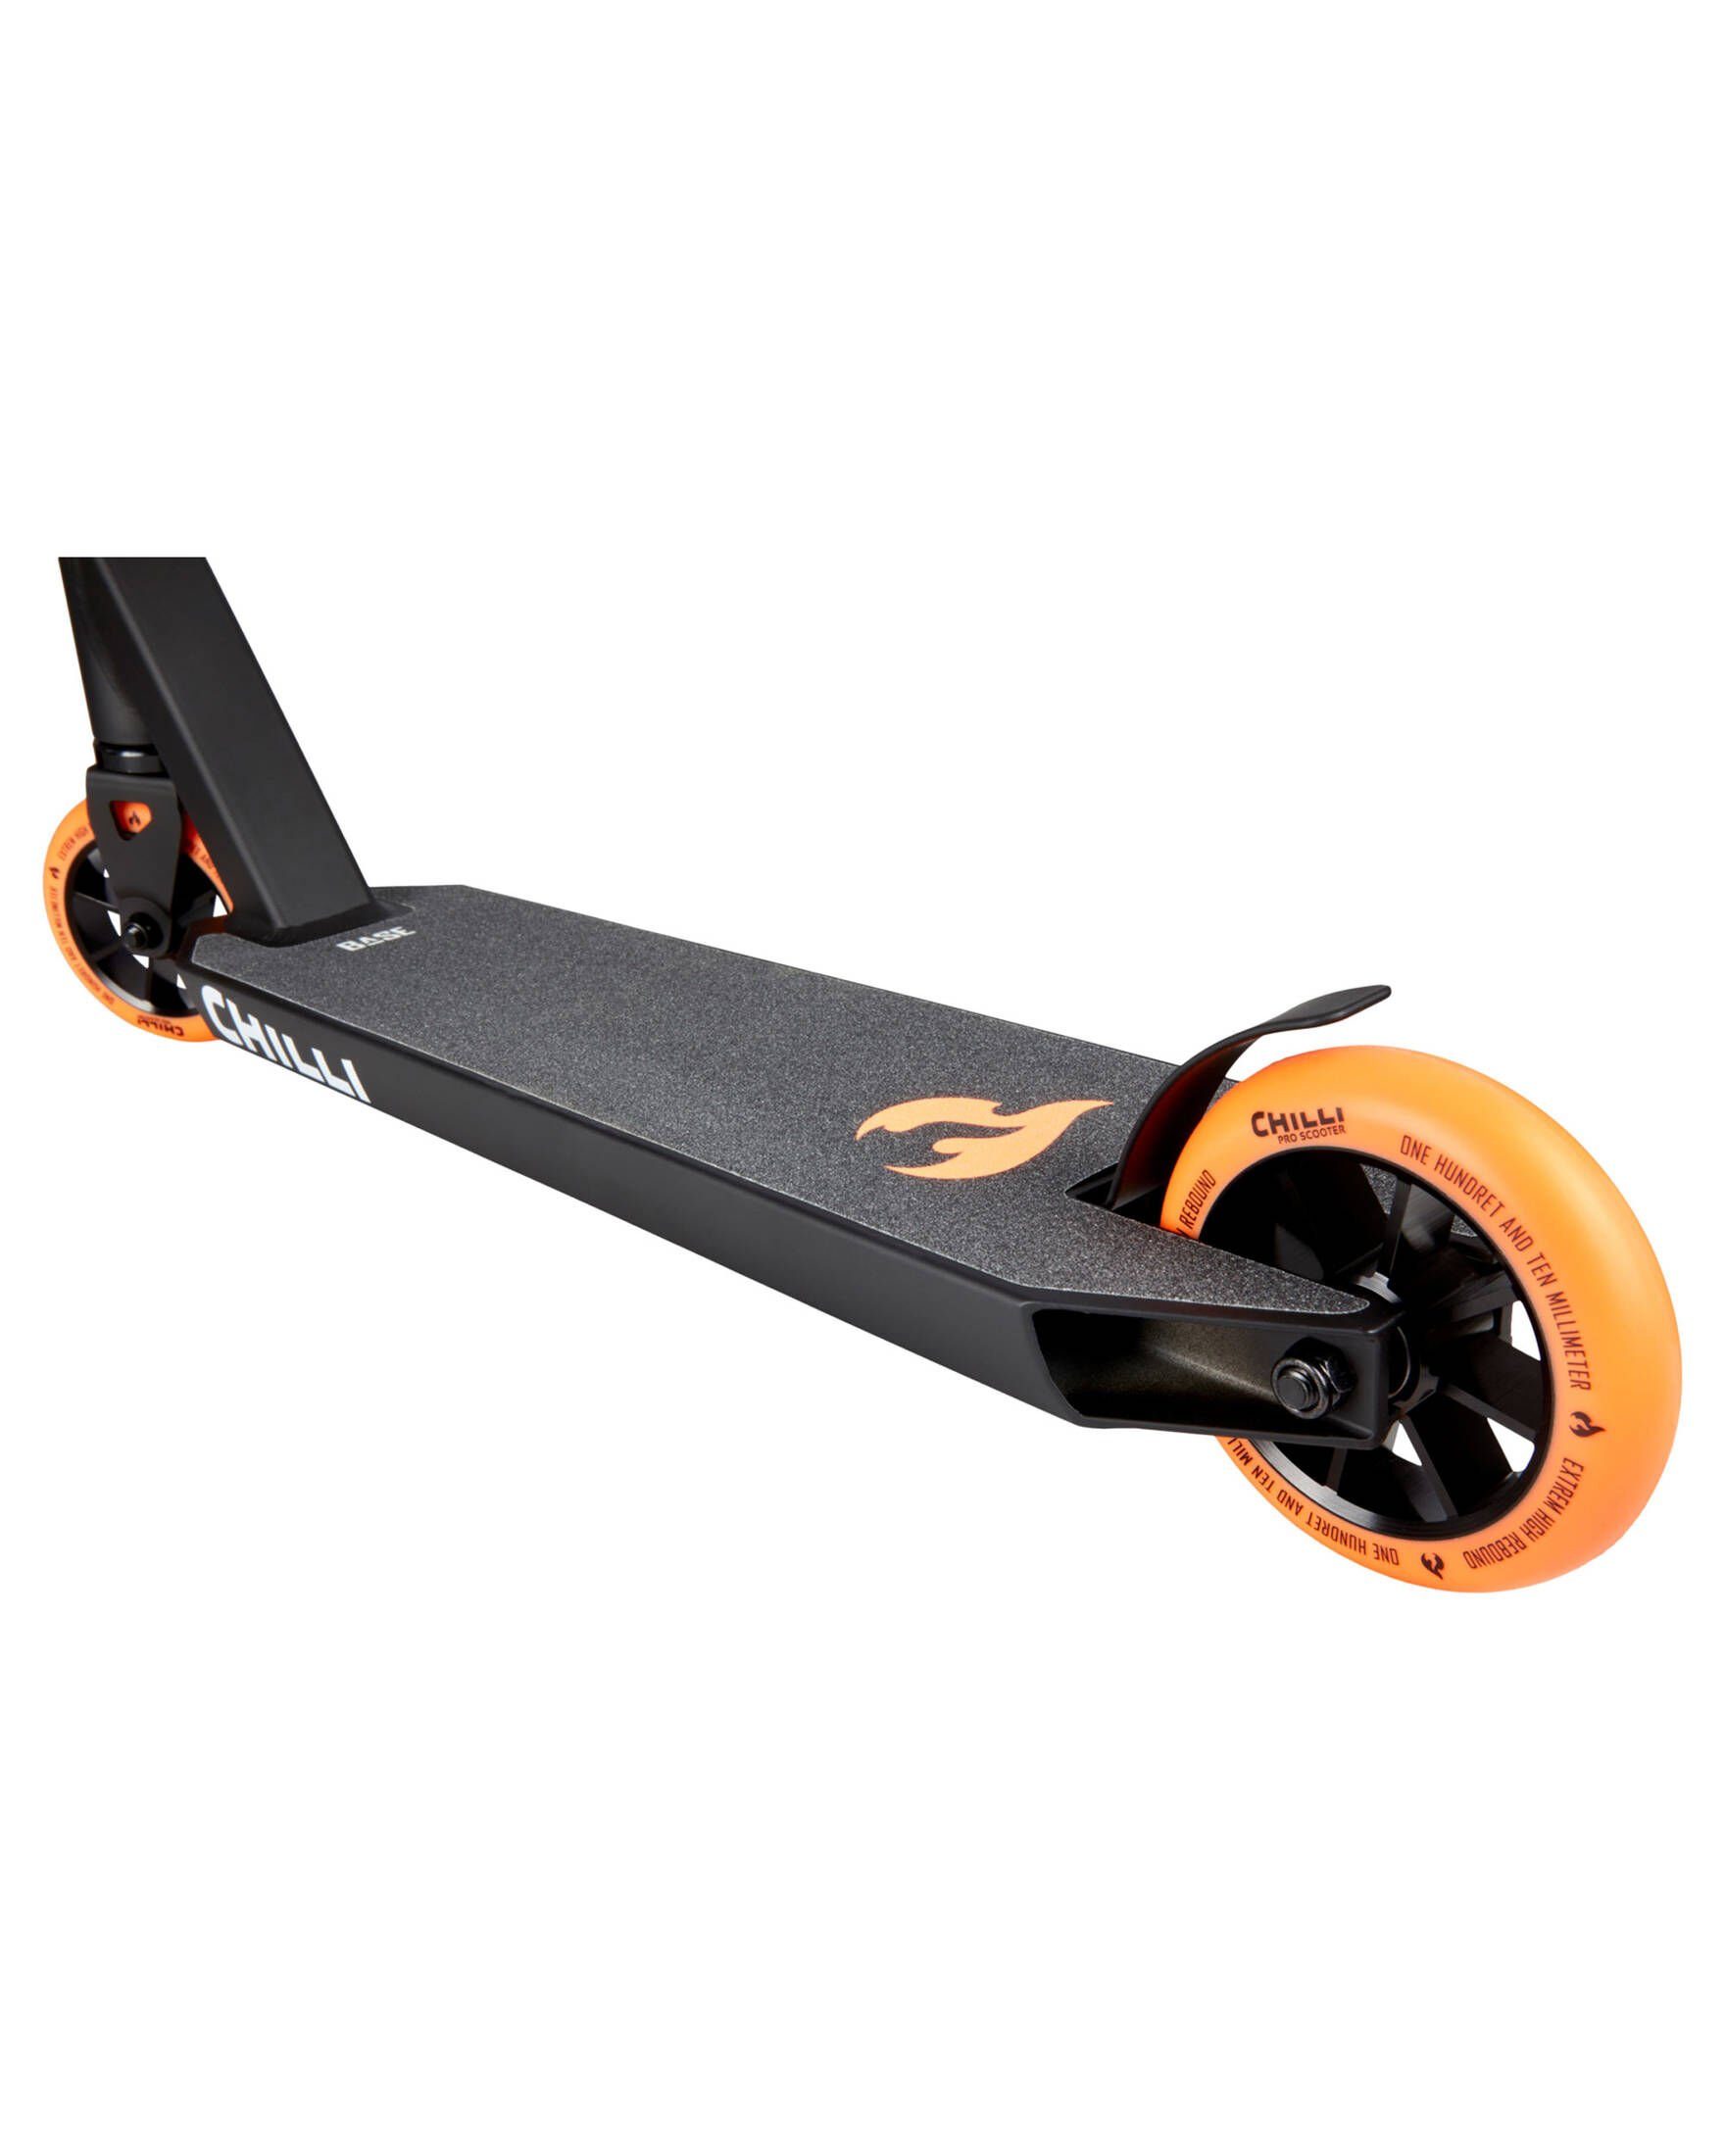 Chilli Tretroller Roller / Scooter (1 BASE, tlg) orange (506)